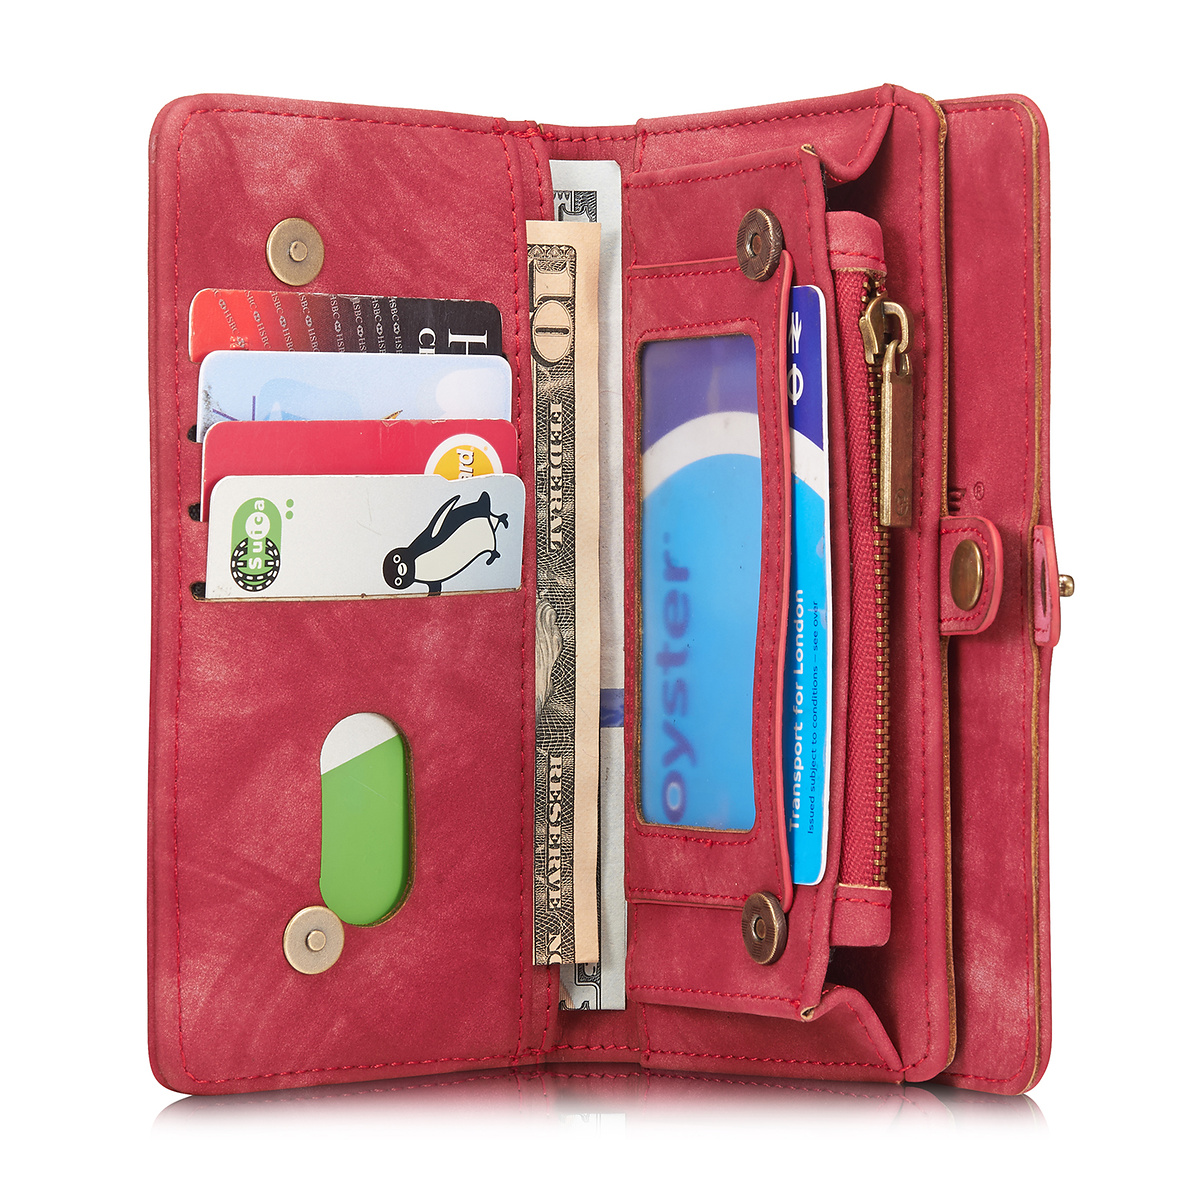 CaseMe plånboksfodral med magnetskal till iPhone 6/6S, röd